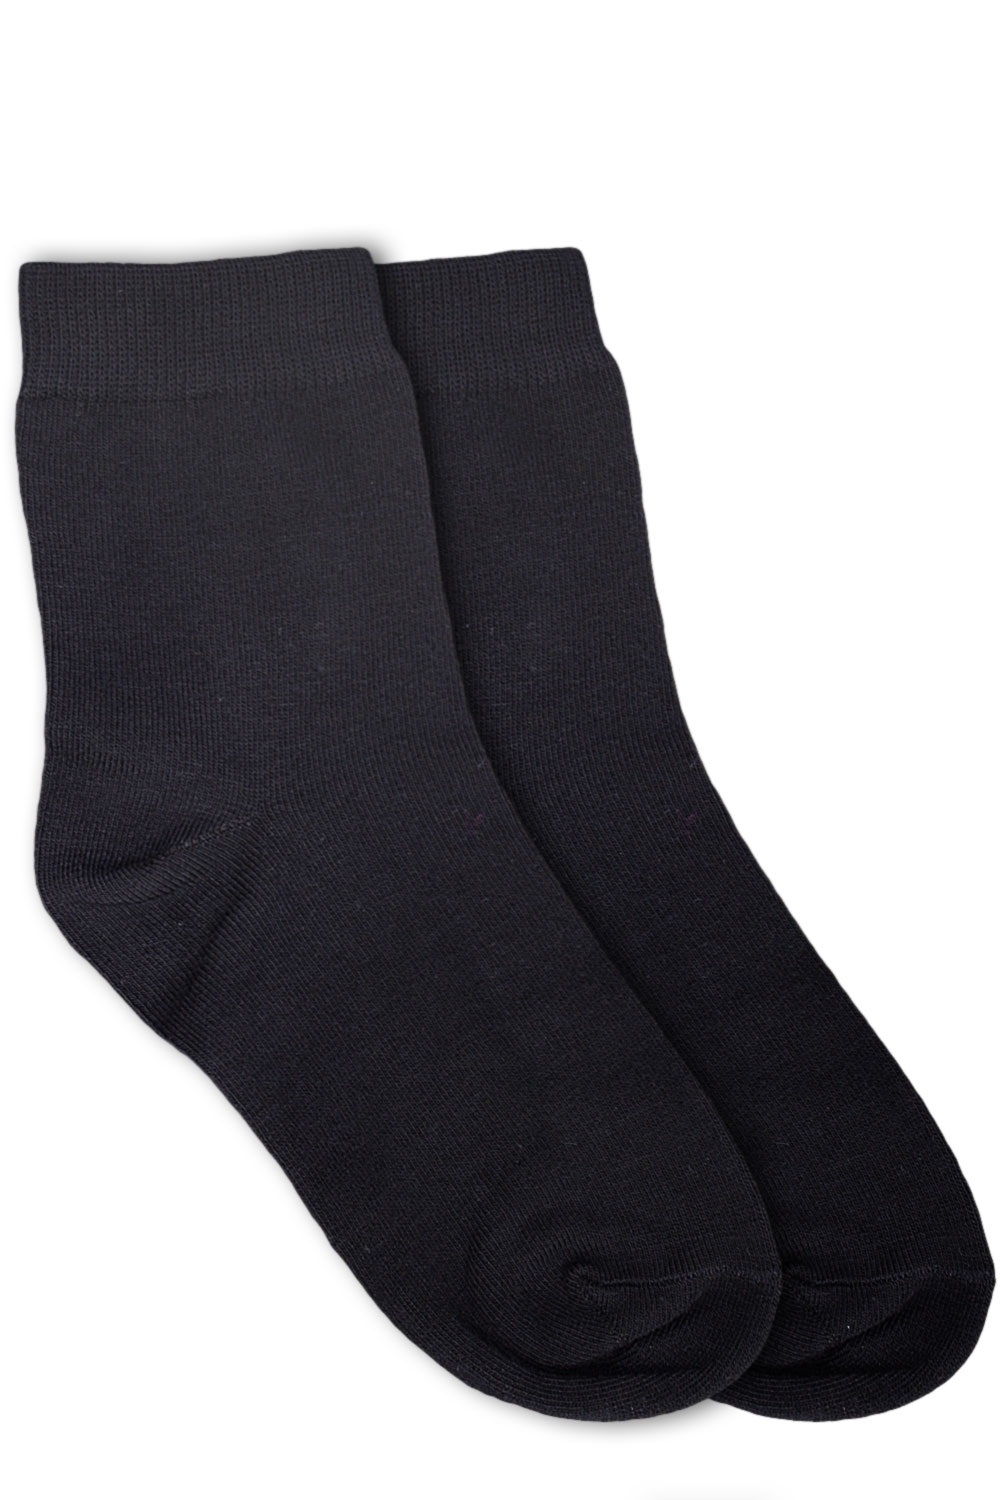 Черные носки хлопок. Columbia черный носки короткие. Хлопчатобумажные носки. Носки хлопчатобумажные мужские. Носки мужские хлопковые.